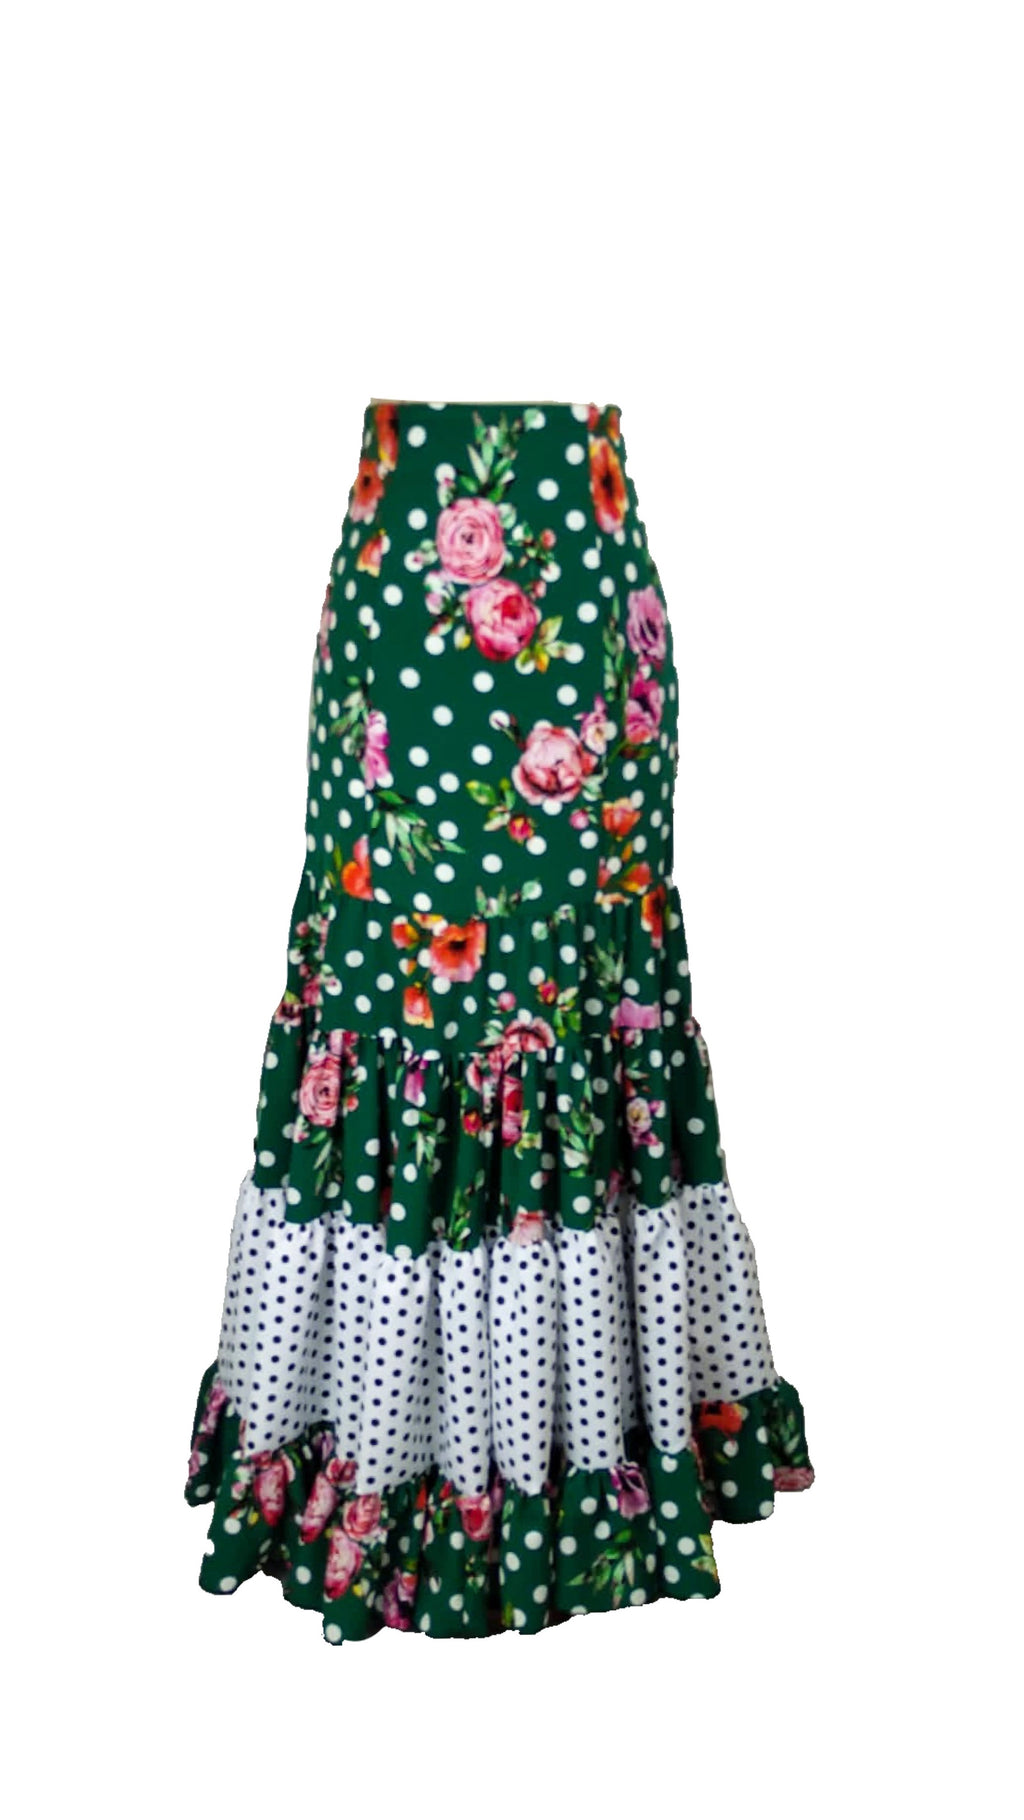 Faldas flamencas canasteras en crespón – FlamencoPasión